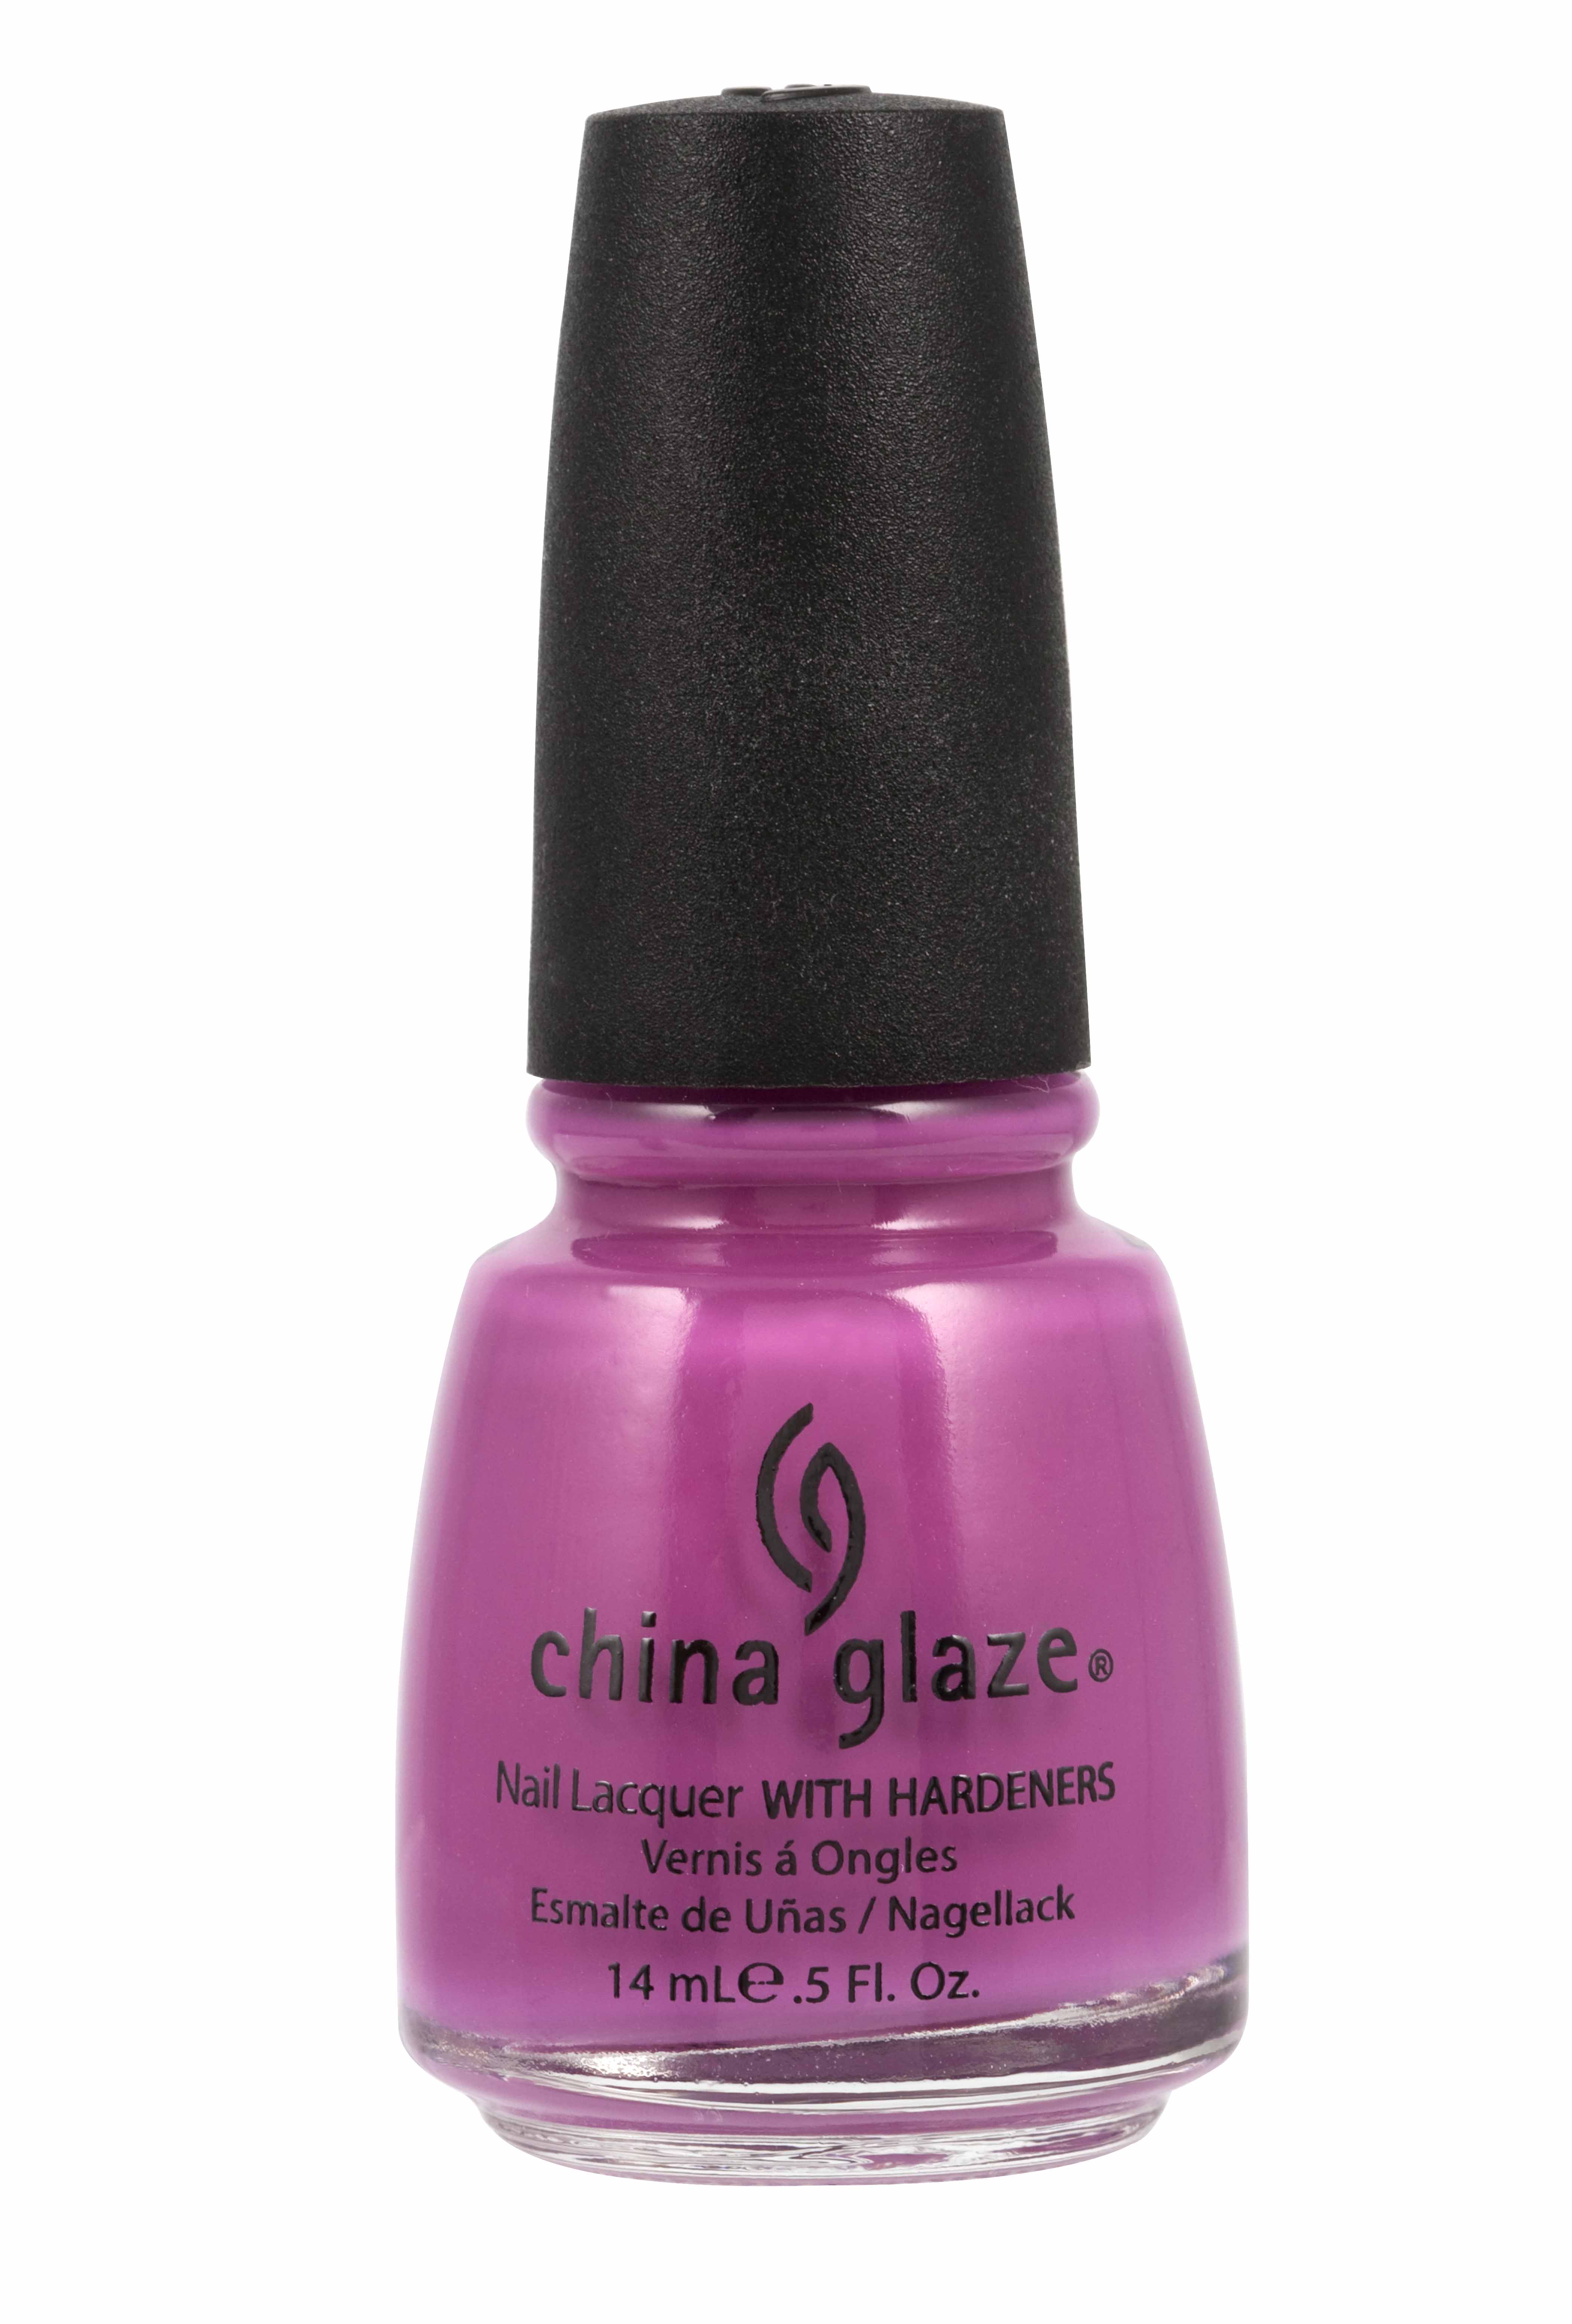 China Glaze New Nail Polish Lacquer Nail Art All Color Shades 14m eBay.